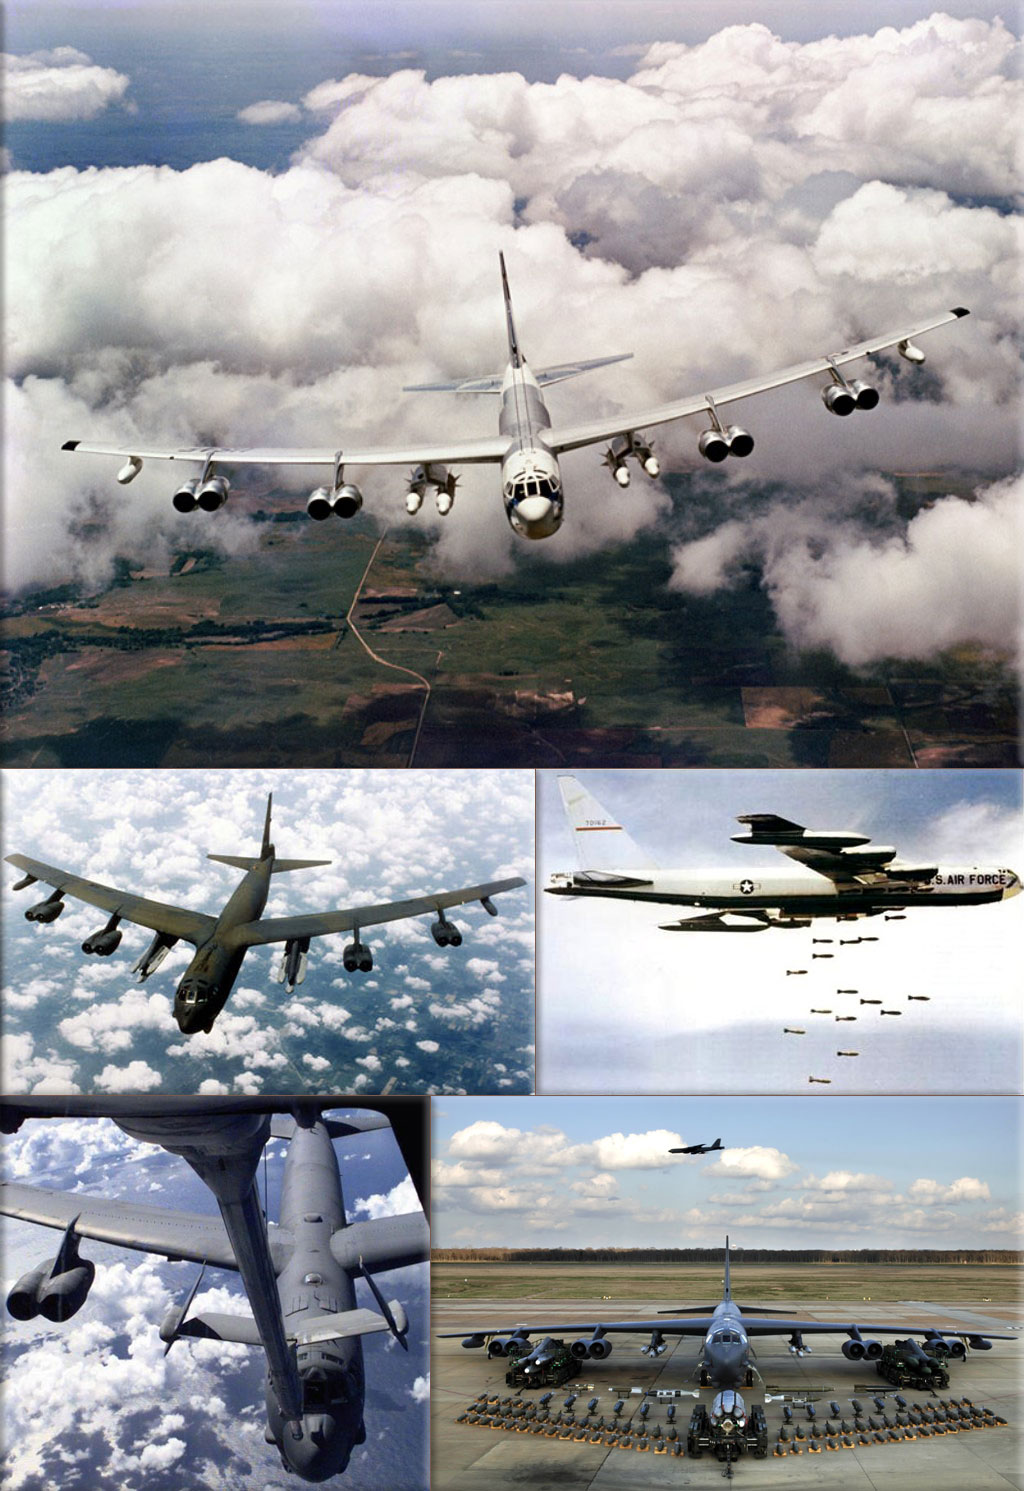 Vietnam War: Boeing B-52 Stratofortress